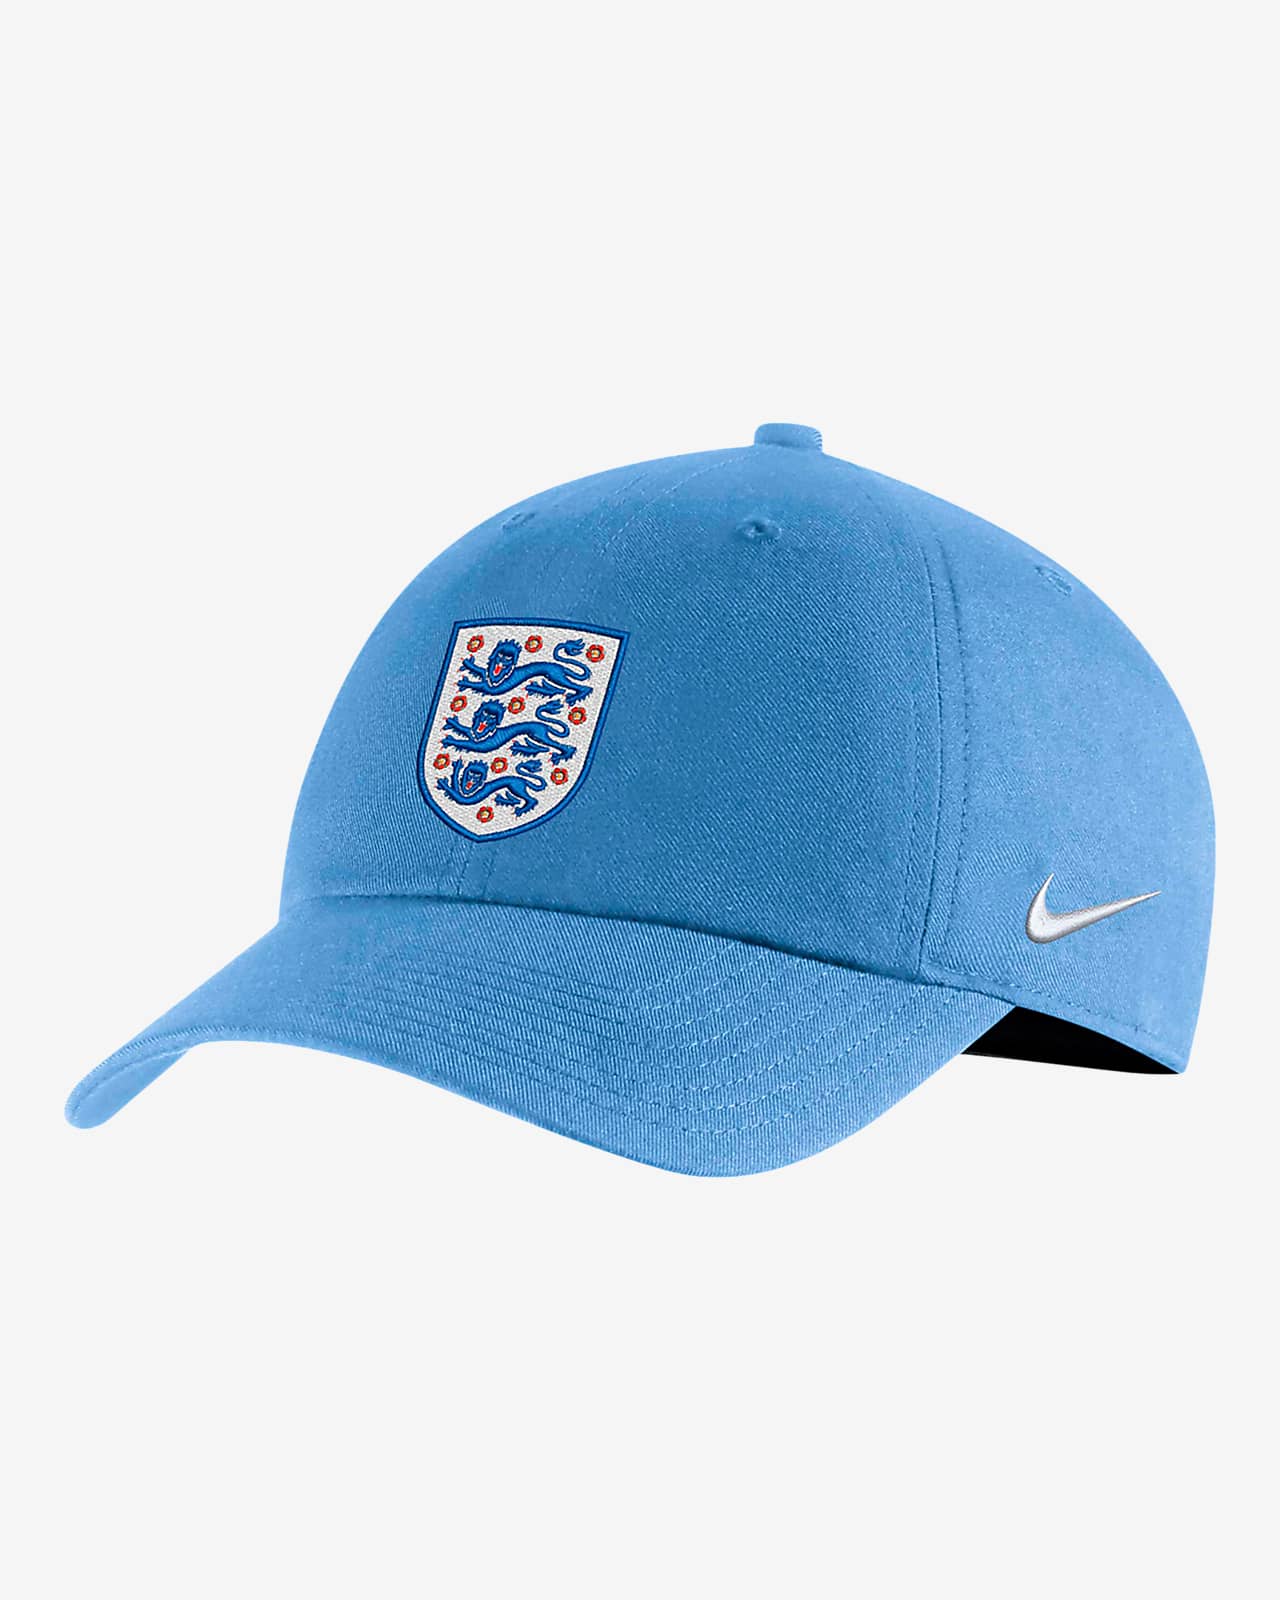 England National Team Campus Men's Nike Soccer Adjustable Hat